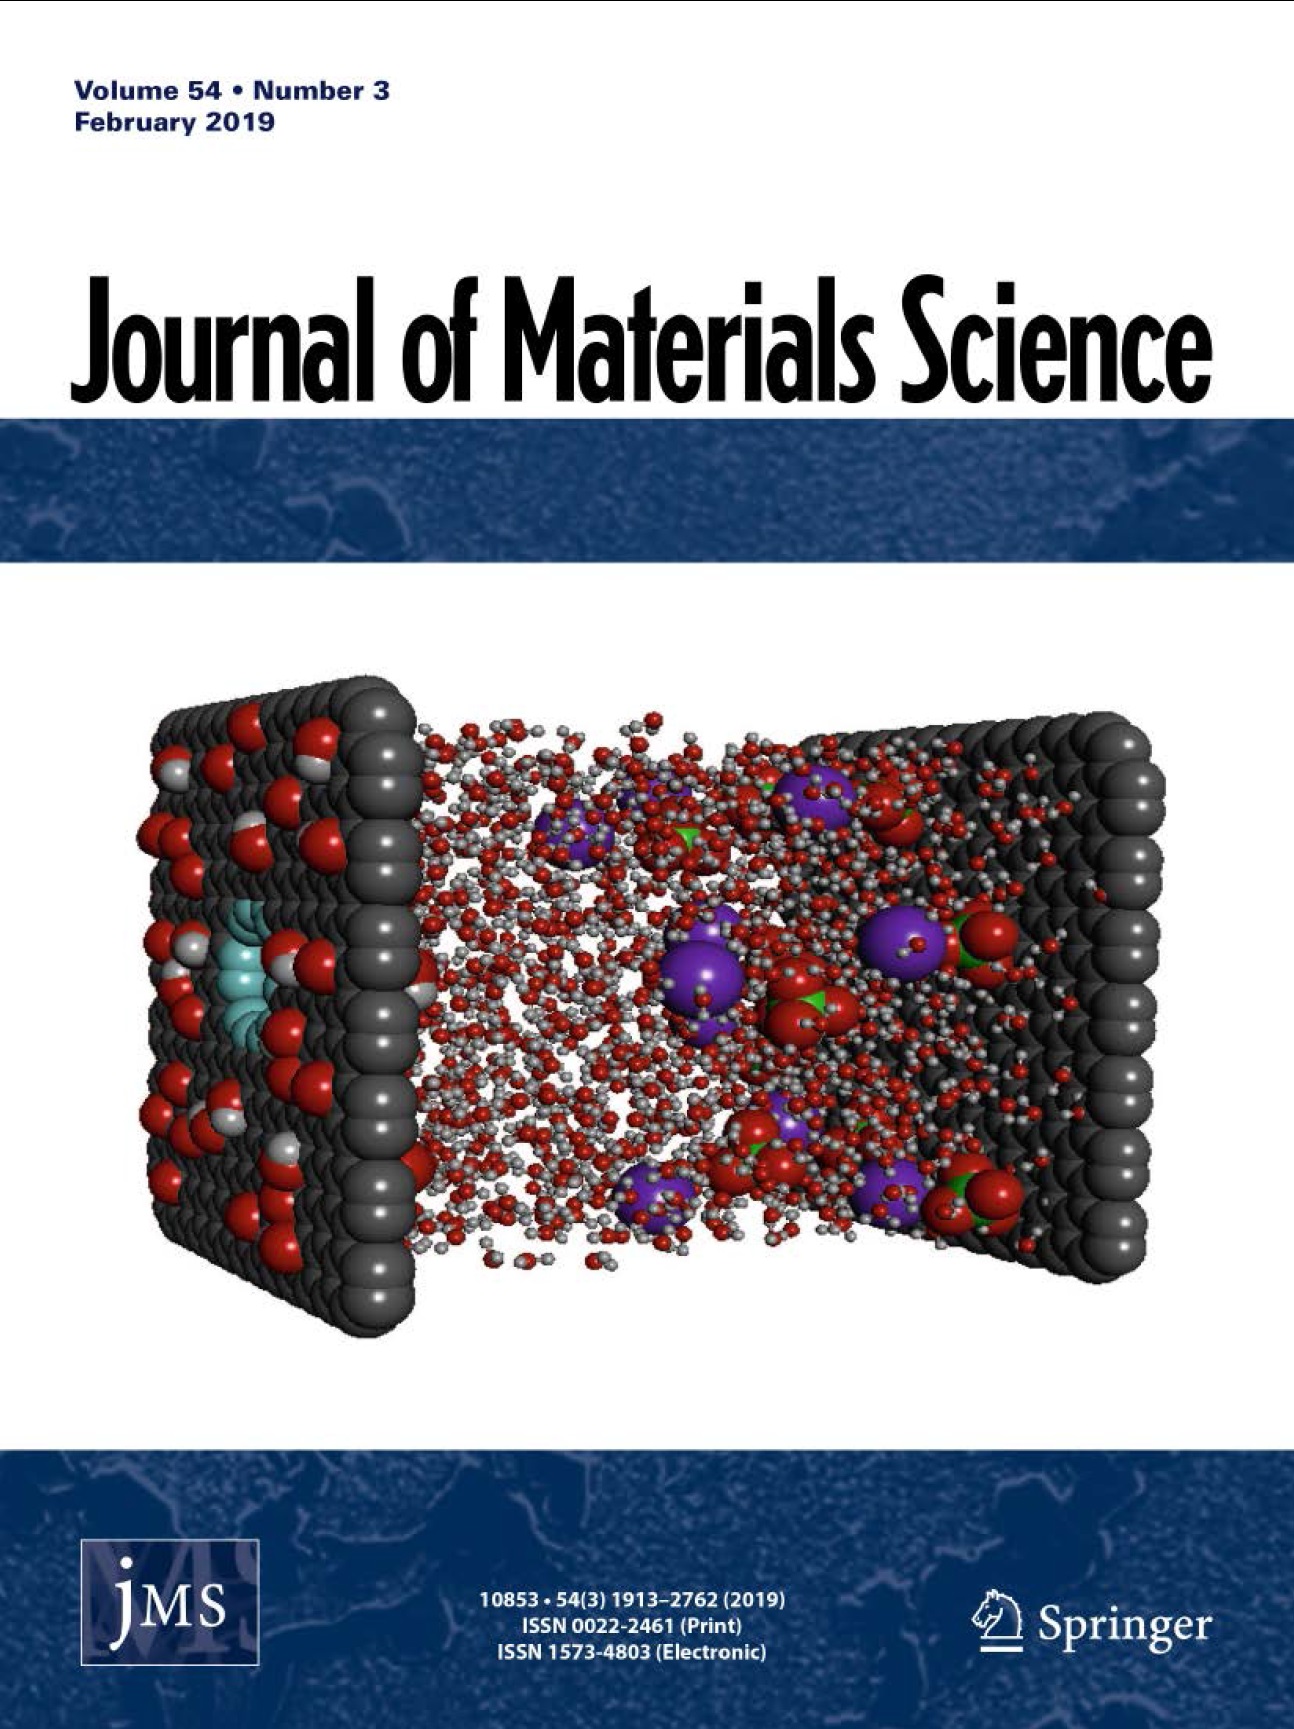 طرح روی جلد وادیتور شماره ویژه Journal of Materials Science توسط جناب آقای دکتر علیرضا ختایی